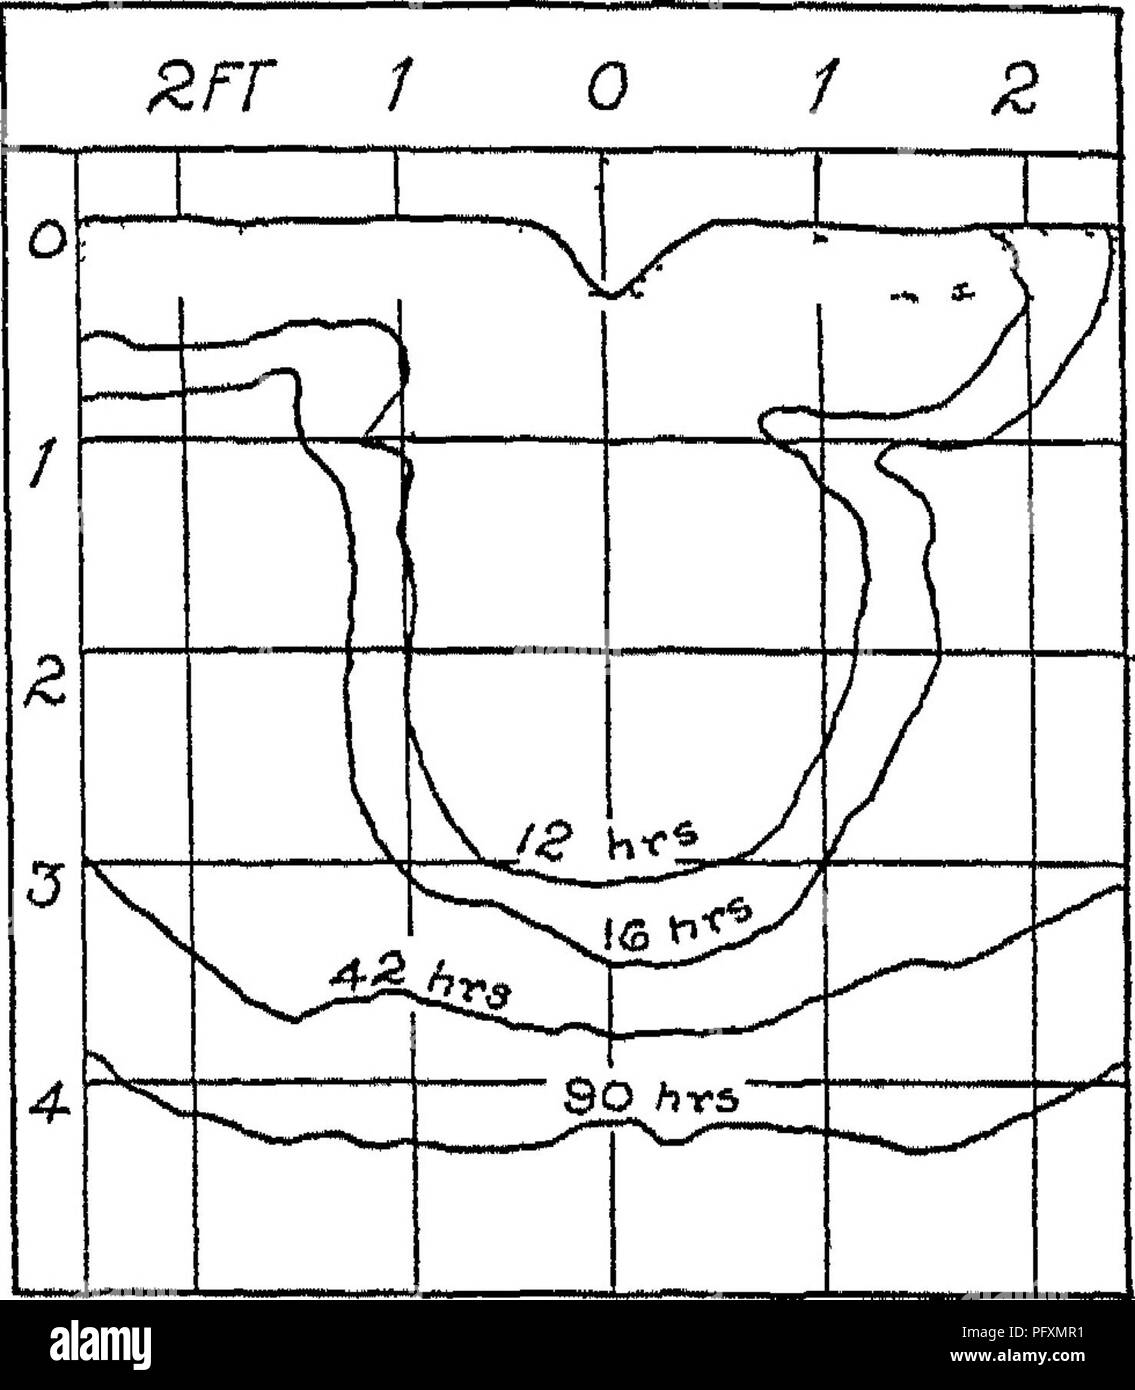 . Les sols, leurs propriétés et la gestion. Les sols. 704 : LES SOLS ET LA GESTION DES PROPRIÉTÉS DE L'uets sillons par percolation et par mouvement capillaire. Causes de la percolation de l'accumulation de l'eau sous l'extrémité supérieure des sillons ; mouvement capillaire distribue l'eau latéralement ainsi qu'à la baisse, £rr 1 0 7 2 0 f 4 1 1 ^ .-d 1 d c J J J J'^--I, V-s^^*-' / ^. Fig 79 -schémas montrant le taux relatif de mouvement d'eau de l'irrigation en sillons argileuse (à gauche), et les loams sableux (à droite), après l'autre peiiodb du temps et son taux détermine la distance entre les sillons. L Banque D'Images